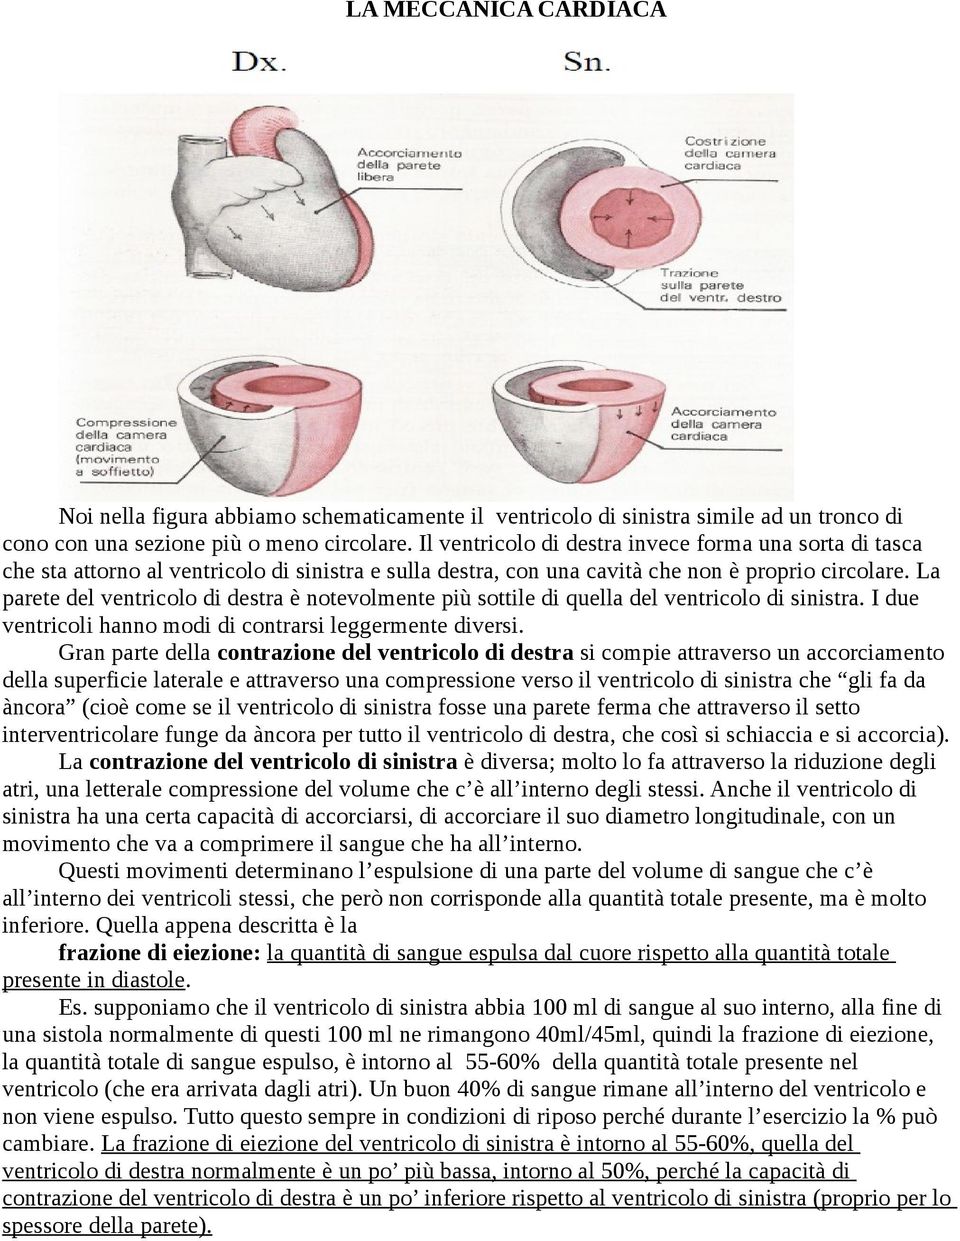 La parete del ventricolo di destra è notevolmente più sottile di quella del ventricolo di sinistra. I due ventricoli hanno modi di contrarsi leggermente diversi.